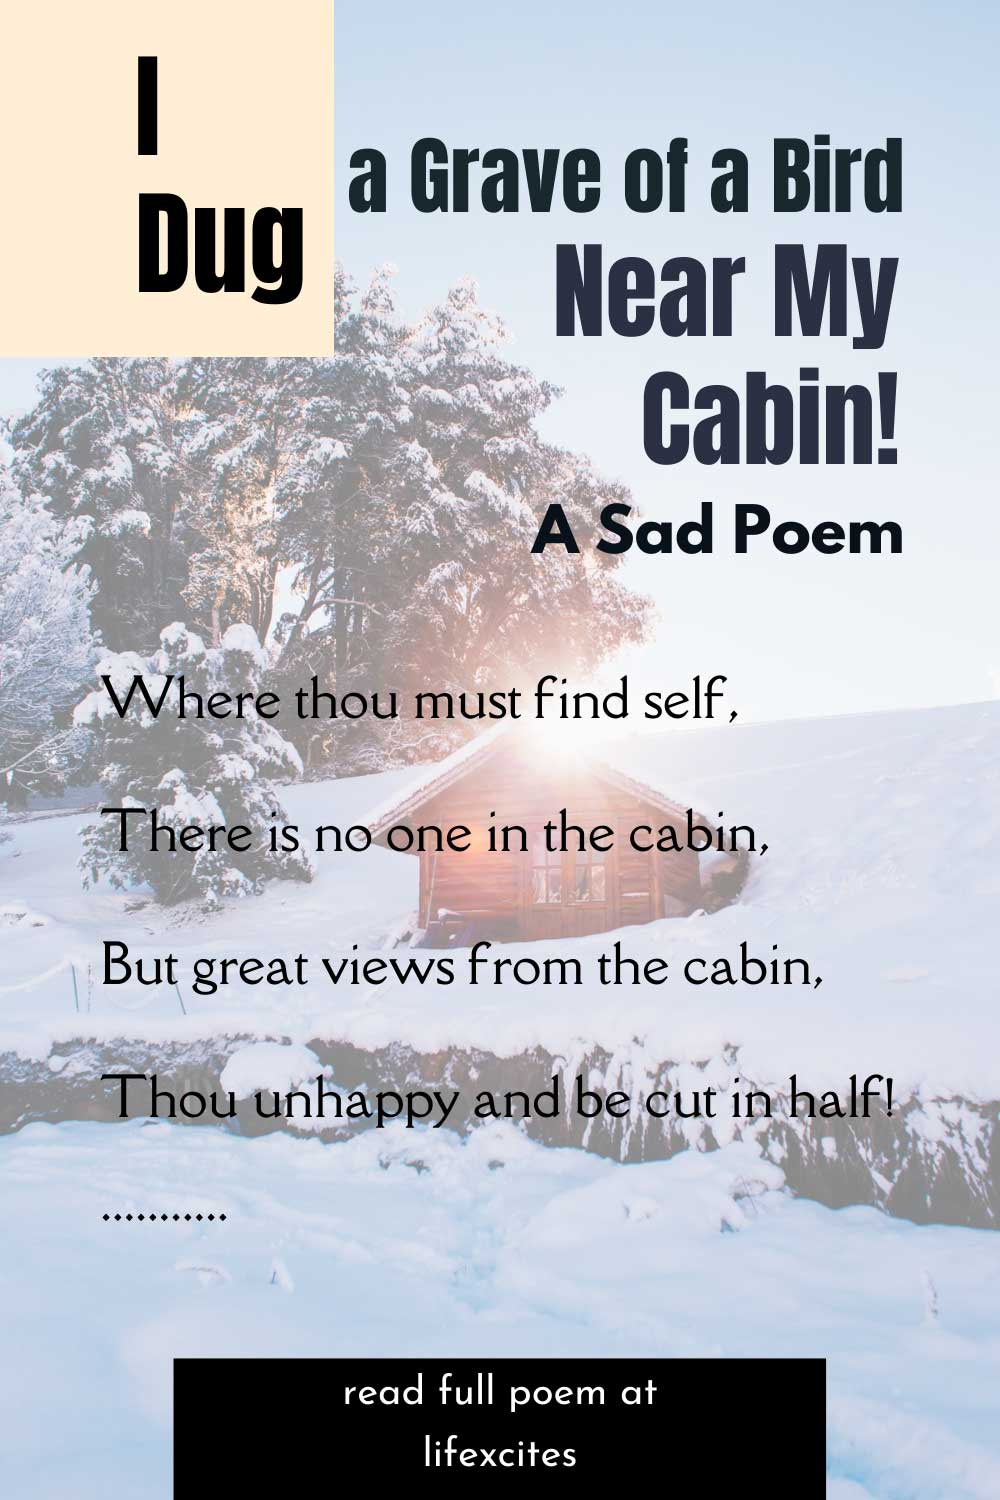 I Dug a Grave of a Bird Near My Cabin! – A Sad Poem